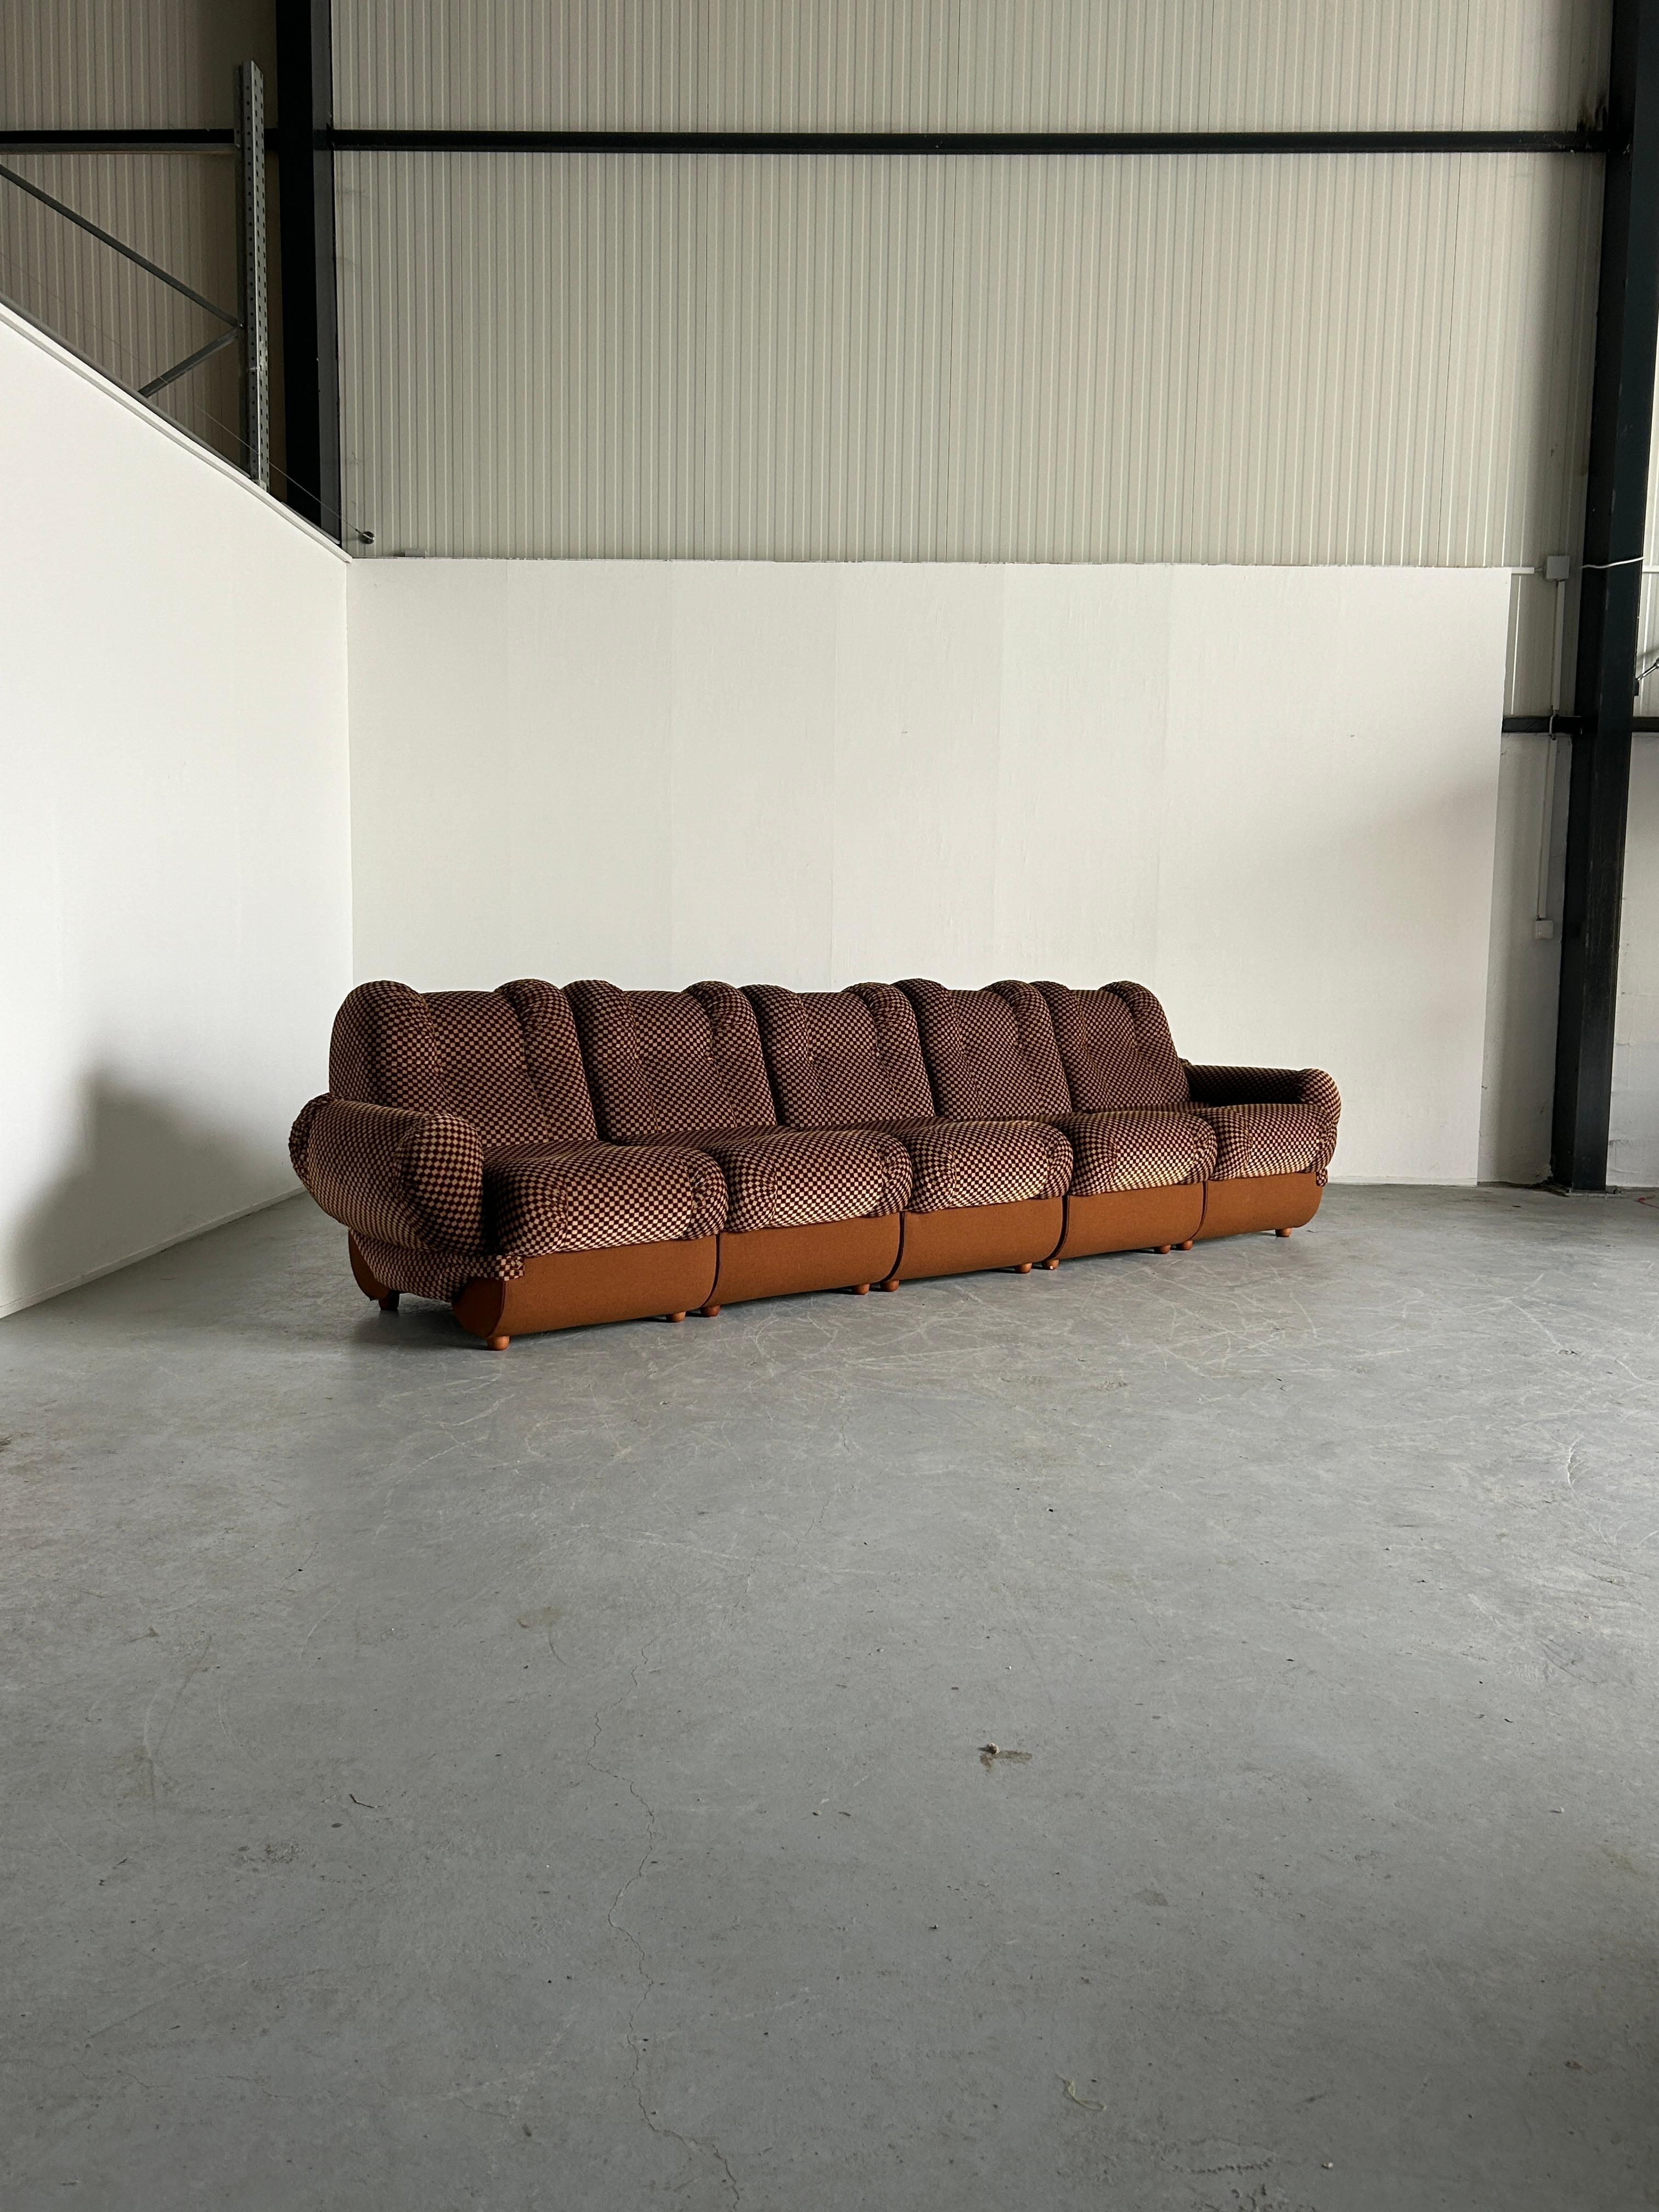 Ein schönes fünfteiliges modulares Cloud-Sofa im Mid-Century-Modern-Stil.
Produktion Ende der 1960er Jahre, Italien.
Konstruktion aus Schaumstoff und Holz, dicke Samtpolsterung.

In ausgezeichnetem Vintage-Zustand mit minimalen erwarteten